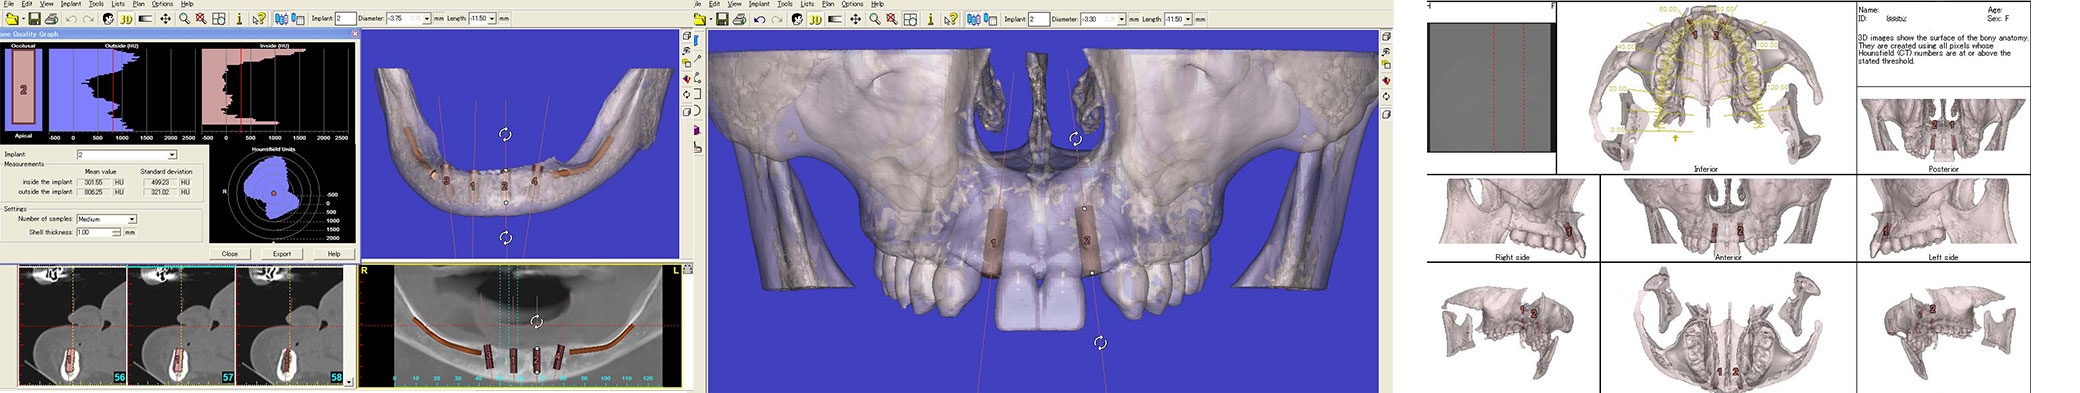 3次元CT画像解析/シミュレーションソフト、DTX Studio Implant、およびSim/Plantの導入